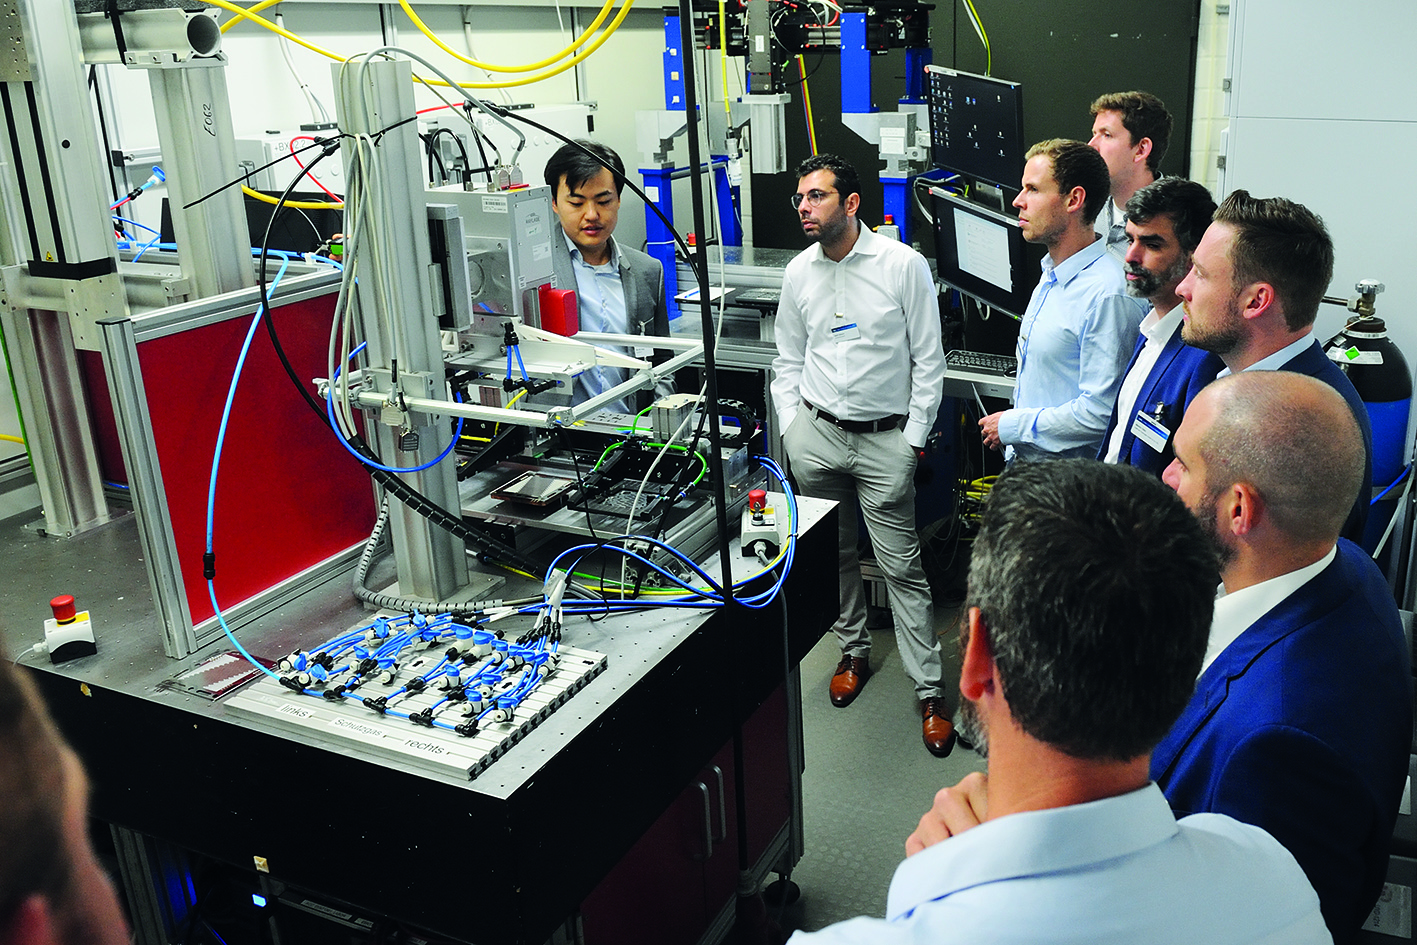 Auf 300 qm stehen im neuen Hydrogen Lab eine große Bandbreite an lasertechnischen Versuchsanlagen zur Verfügung. Mit den Anlagen werden die laserbezogenen Fertigungsschritte entlang der Prozesskette zur Herstellung von metallischen Bipolarplatten abgedeckt, die in Brennstoffzellen zum Einsatz kommen.